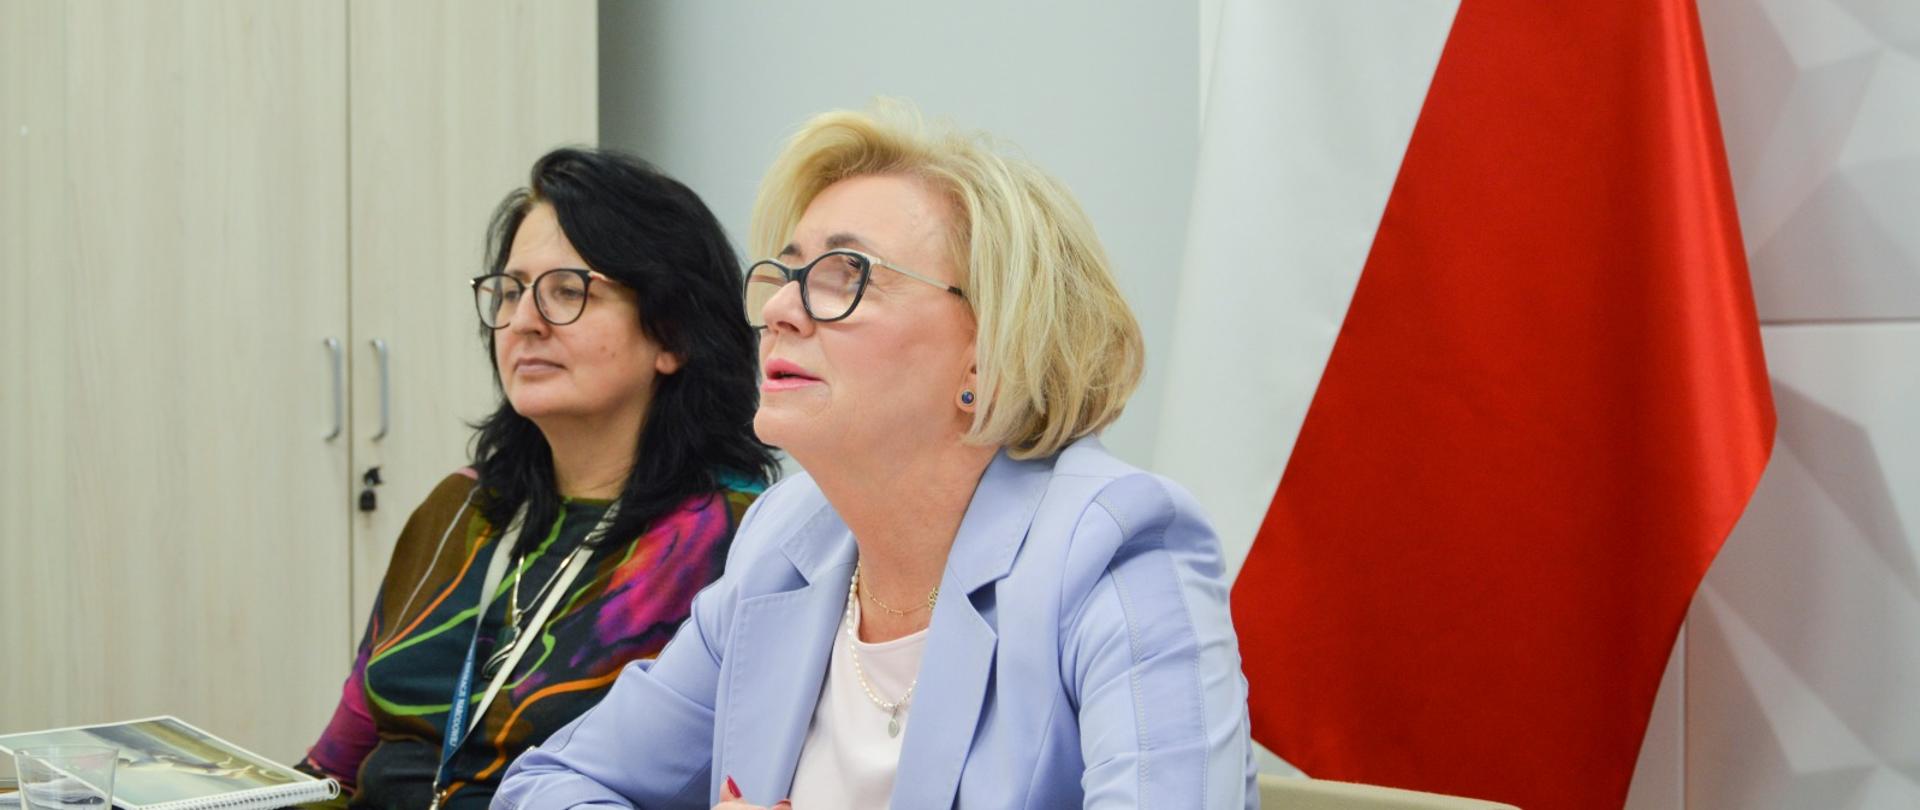 Wiceminister Machałek i kobieta z czarnymi włosami siedzą przy biurku, za nimi przy ścianie polska flaga.